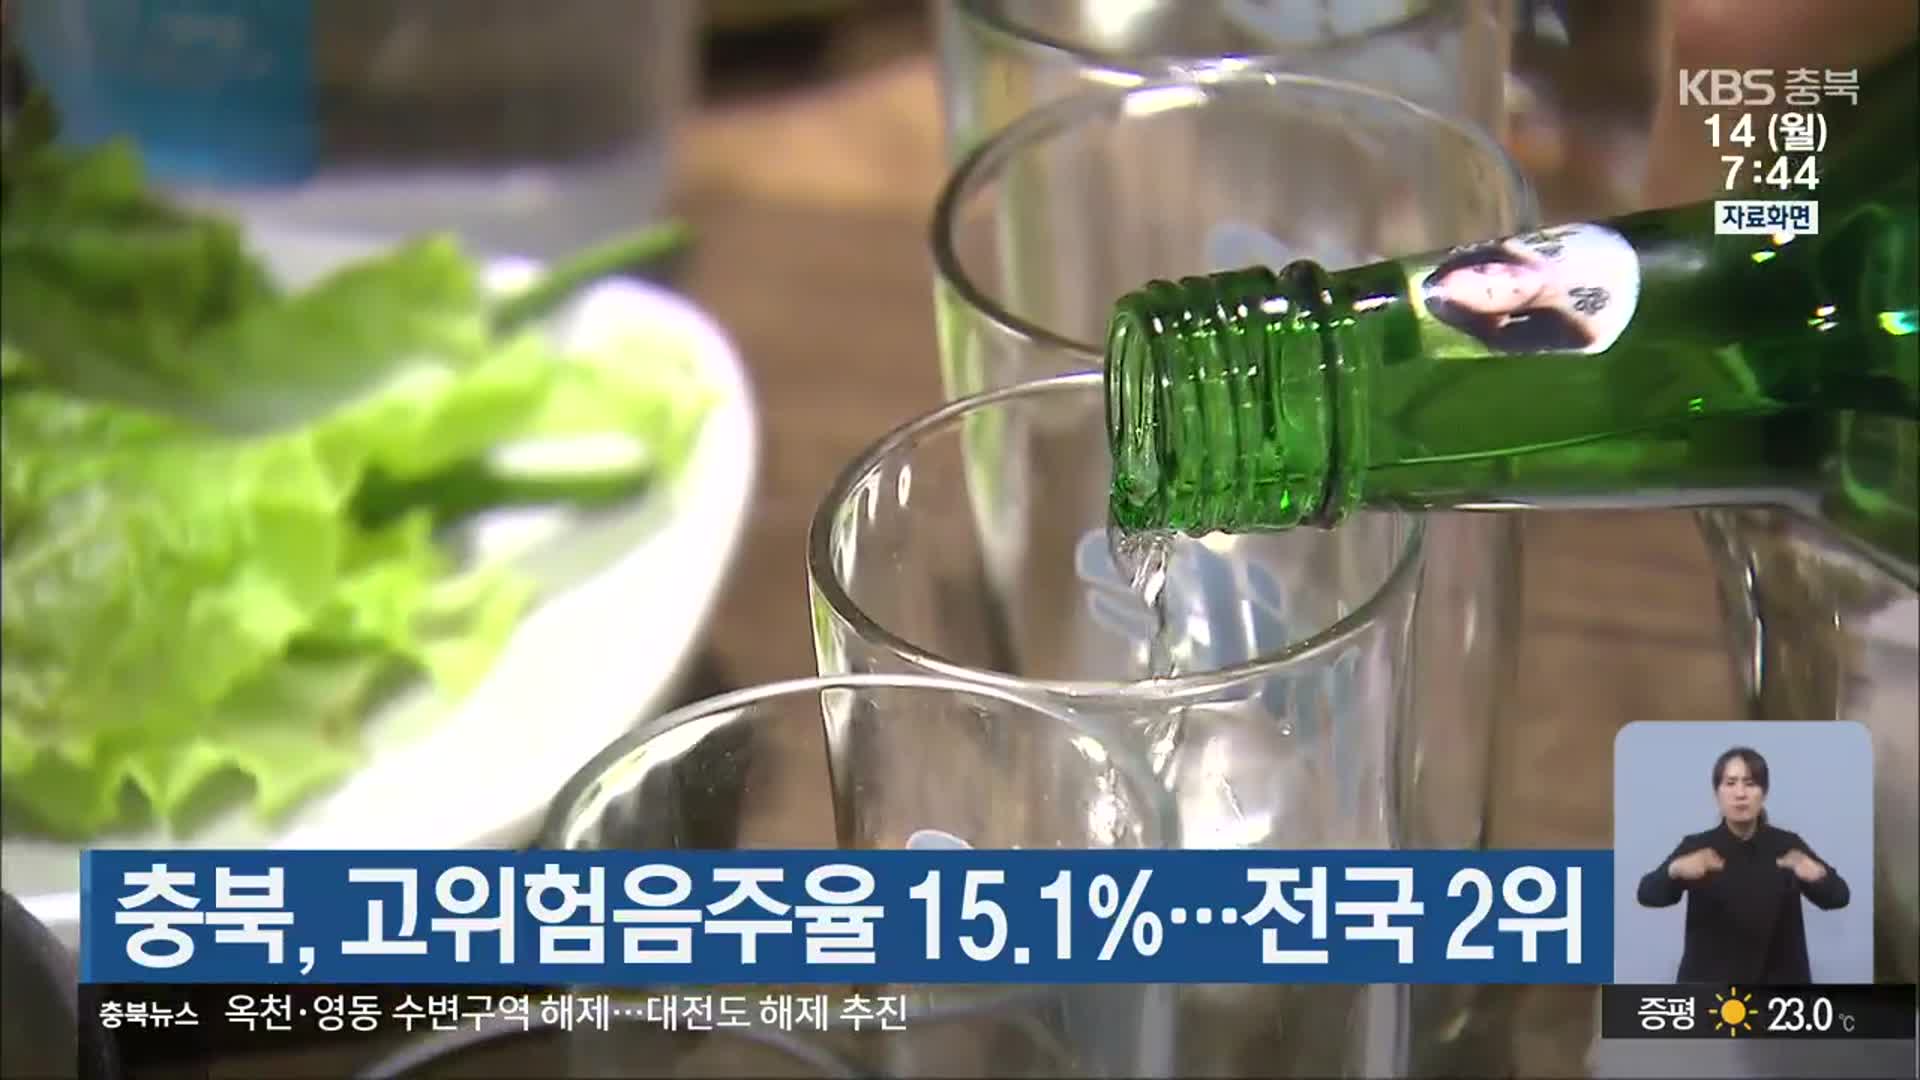 충북, 고위험음주율 15.1%…전국 2위